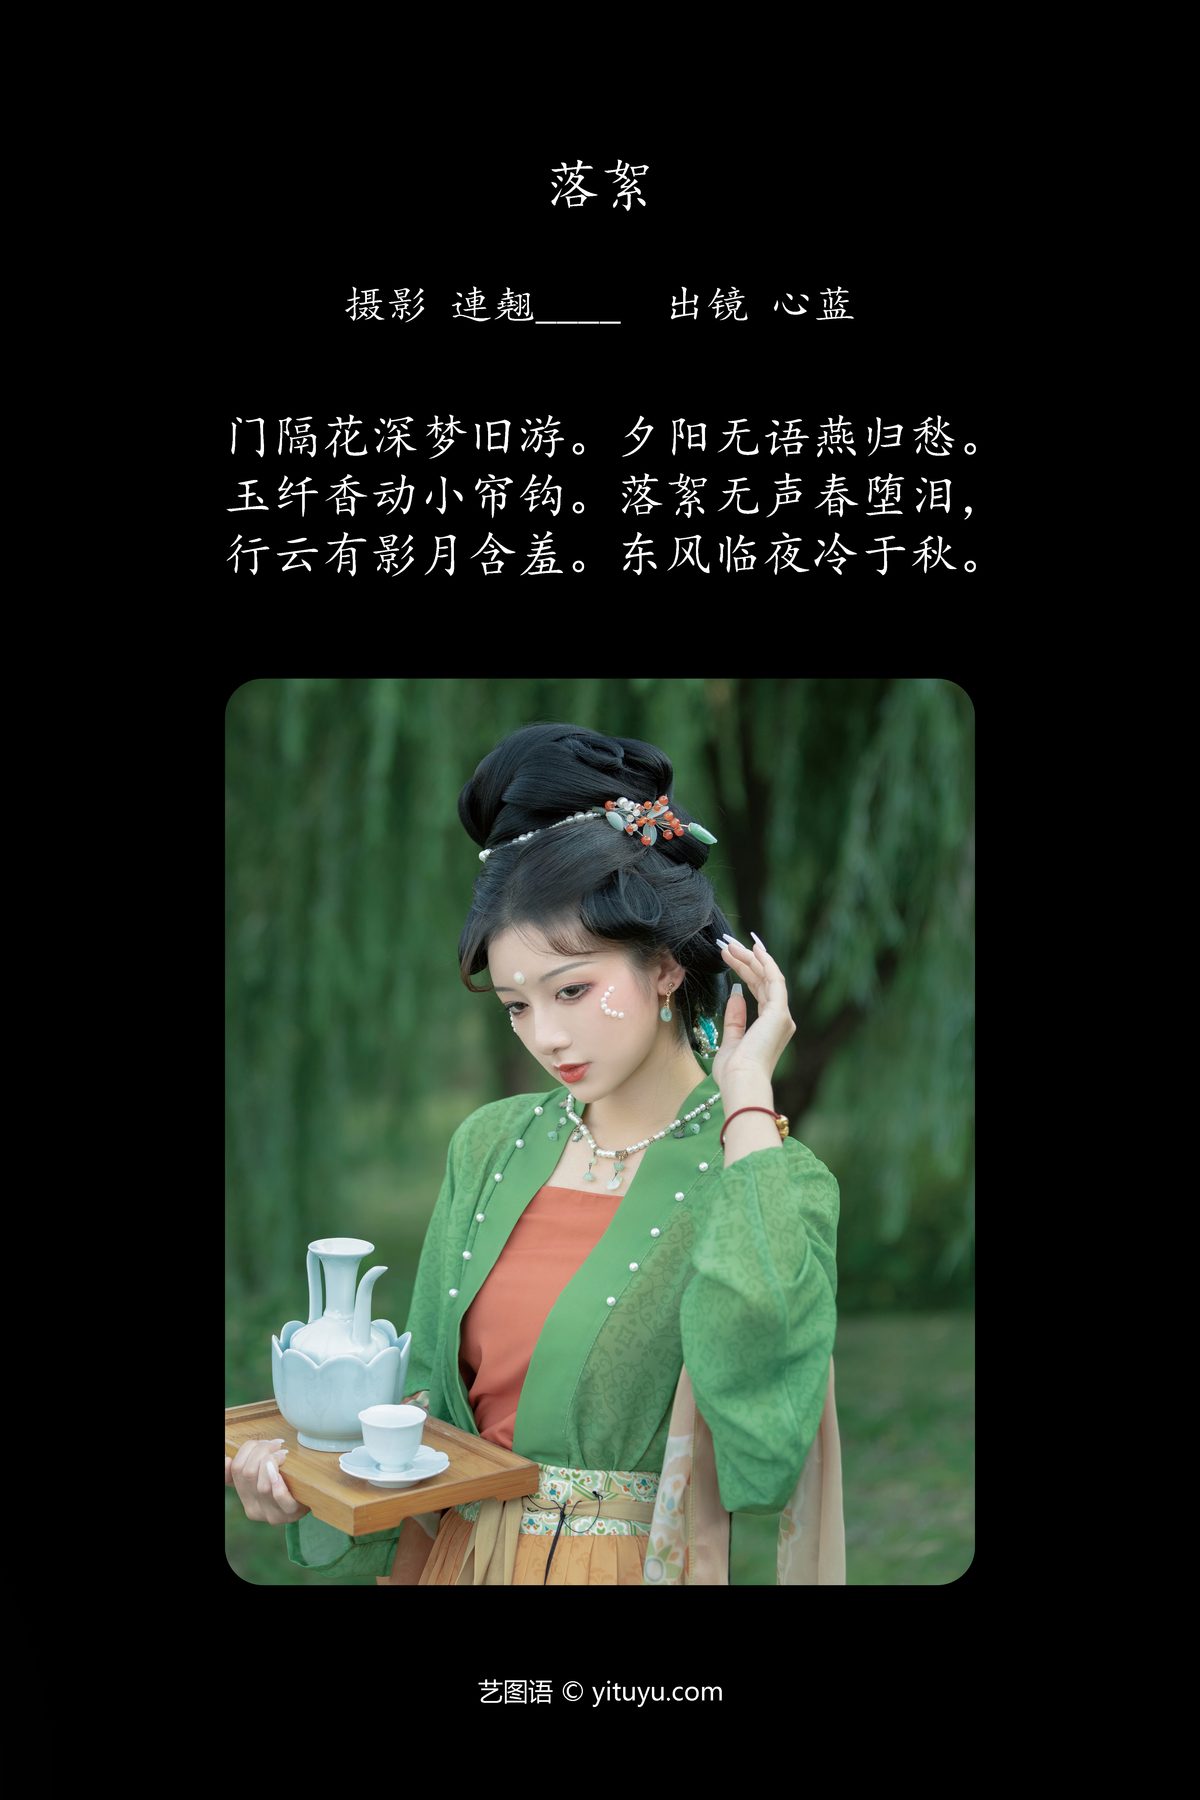 YiTuYu艺图语 Vol 5744 Xin Lan 0002 2074809545.jpg